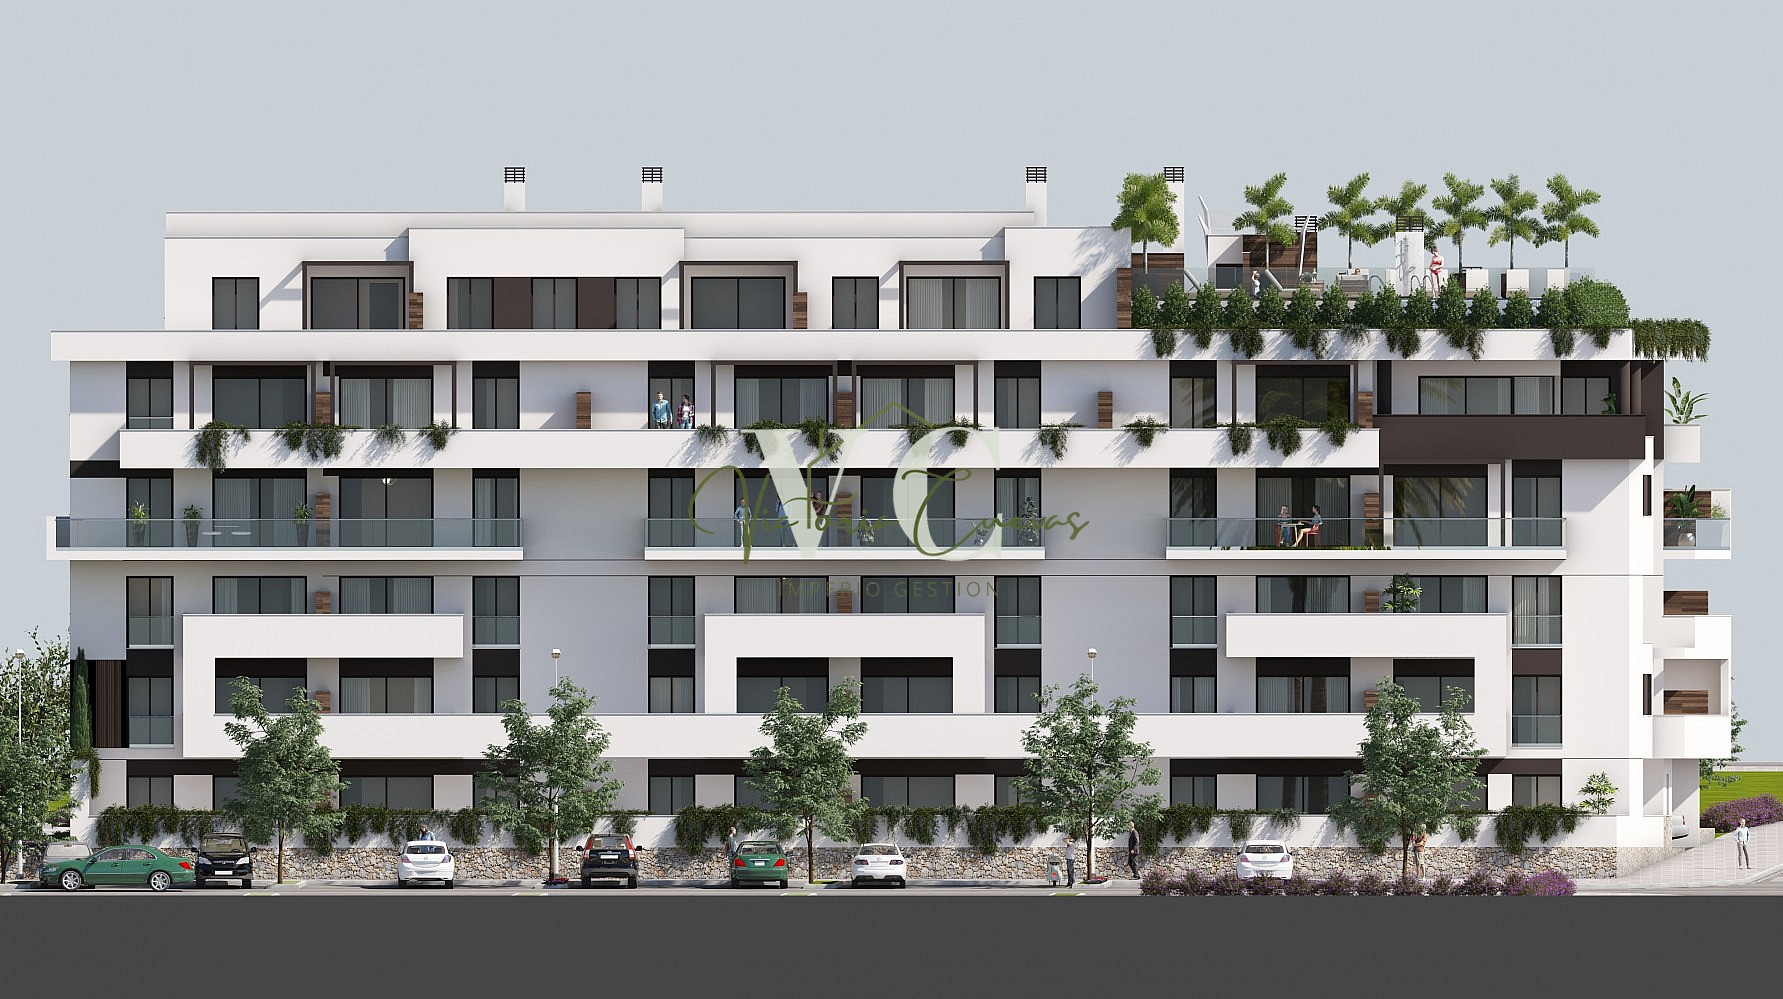 apartment sale torre del mar by 341,000 eur